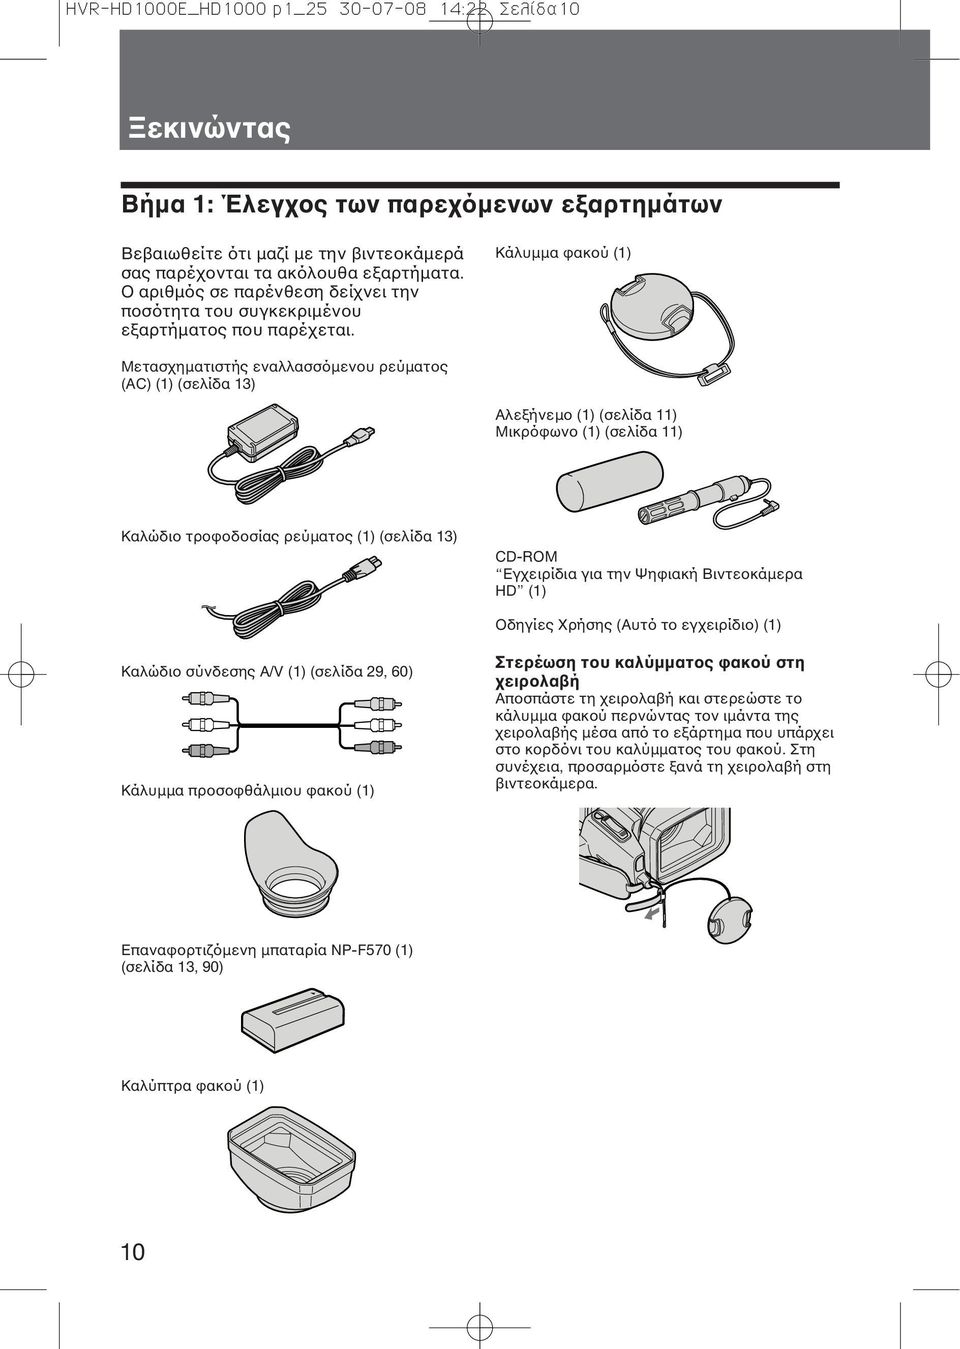 Κάλυμμα φακού (1) Μετασχηματιστής εναλλασσόμενου ρεύματος (AC) (1) (σελίδα 13) Αλεξήνεμο (1) (σελίδα 11) Μικρόφωνο (1) (σελίδα 11) Καλώδιο τροφοδοσίας ρεύματος (1) (σελίδα 13) CD-ROM Εγχειρίδια για